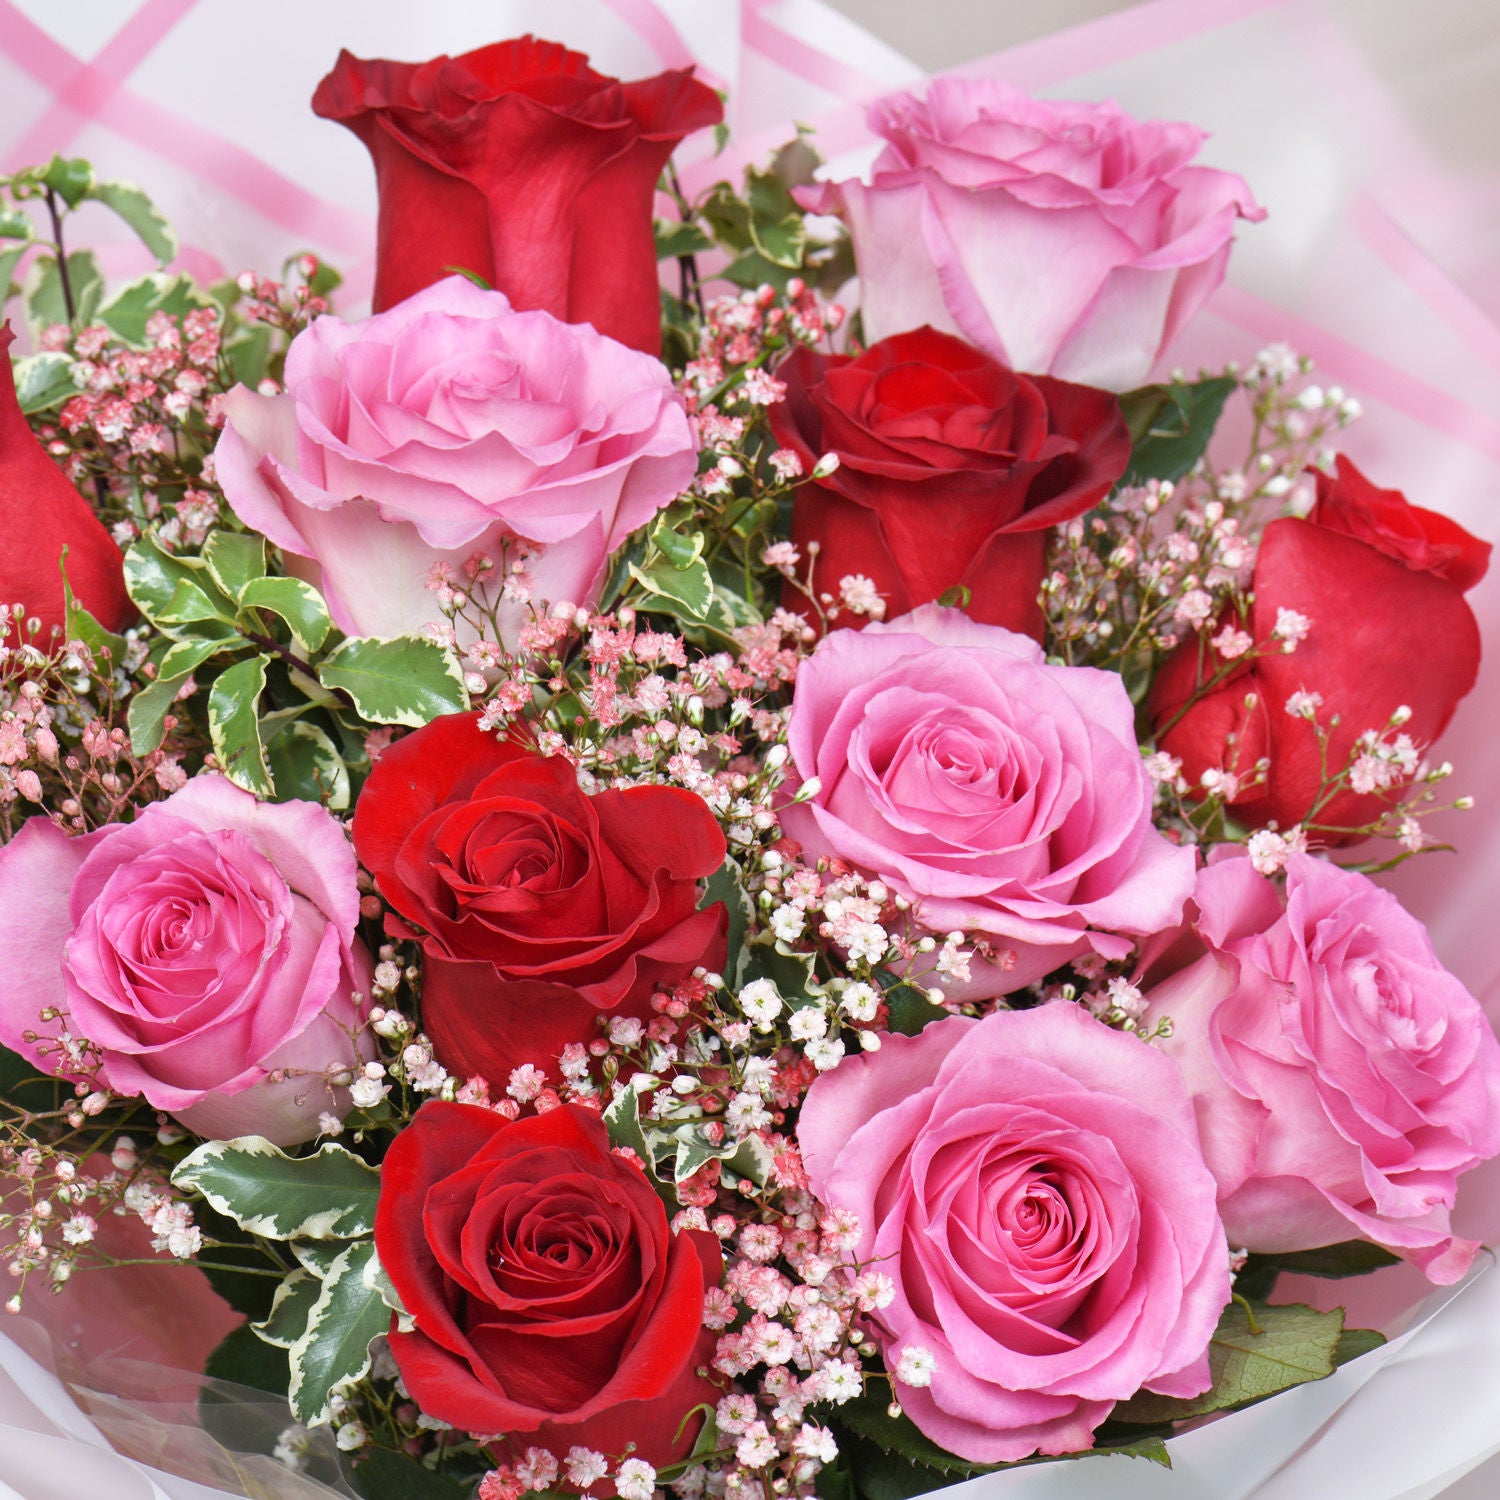 Romantic Rendezvous Roses Bouquet